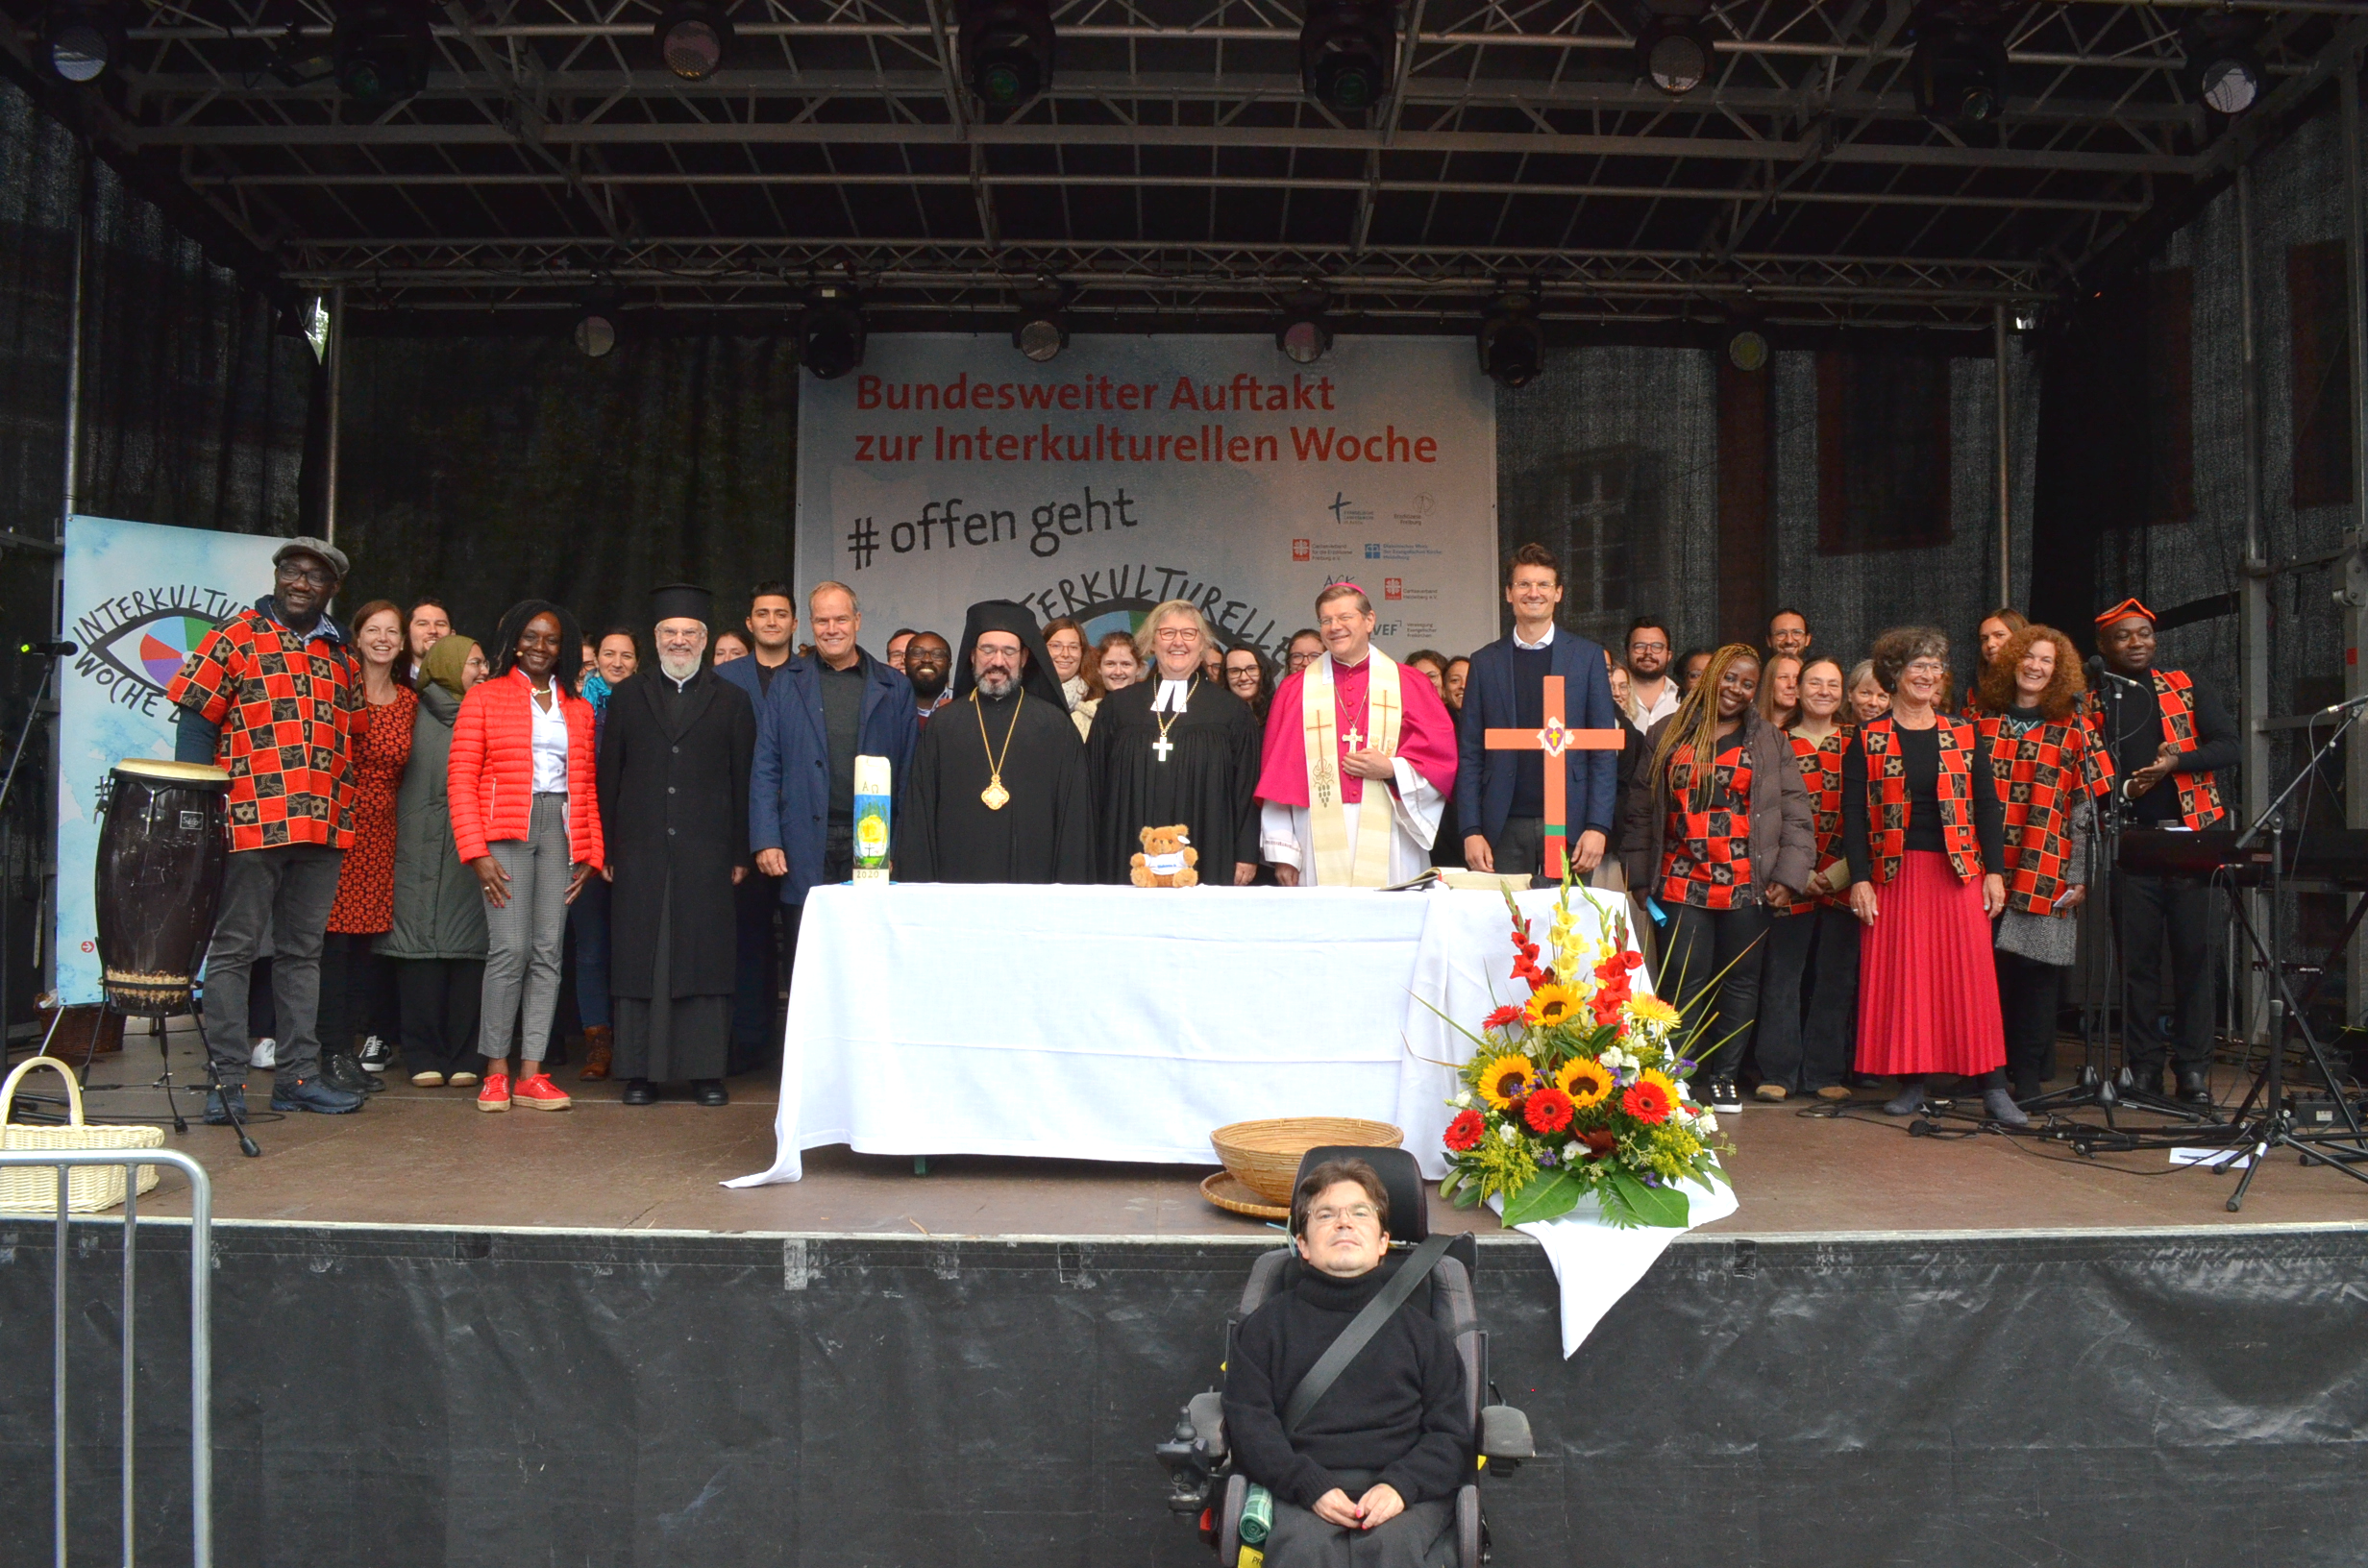 Die Beteiligten des ökumenischen Gottesdienstes zum bundesweiten Auftakt der Interkulturellen Woche in Heidelberg.